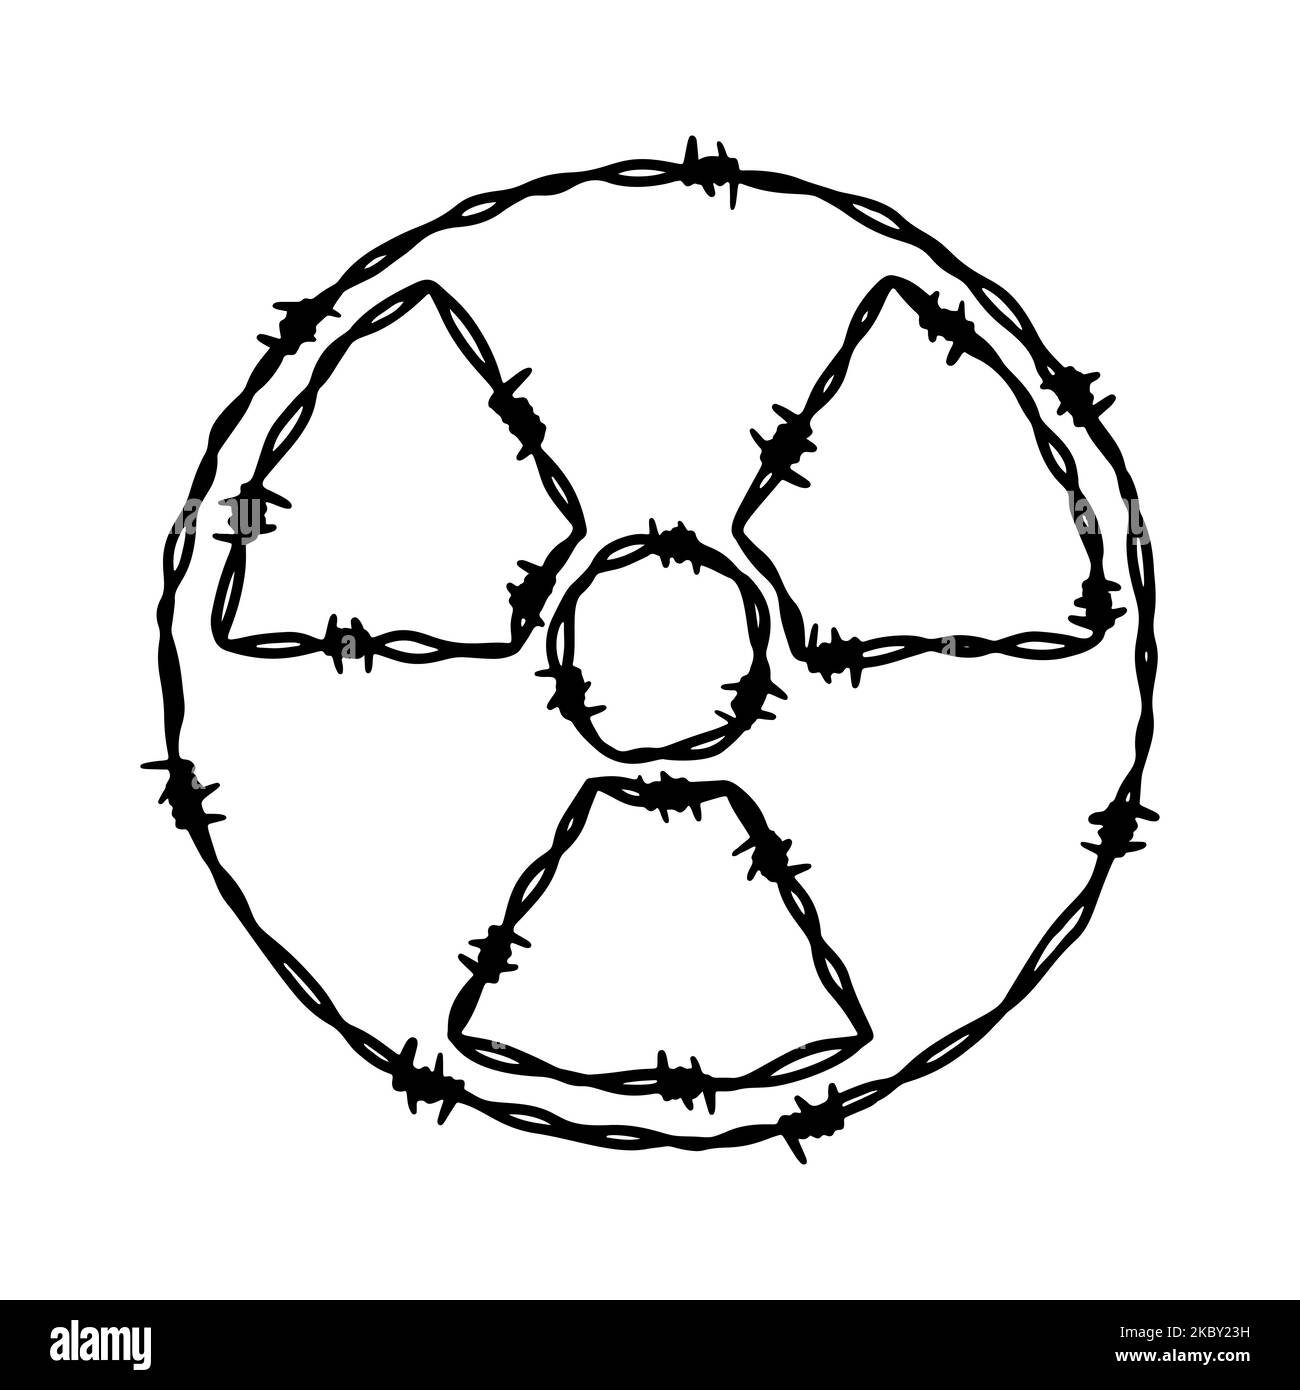 Barbwire Strahlung Gefahr Zeichen Form. Handgezeichnete Vektorgrafik im Skizzenstil Stock Vektor